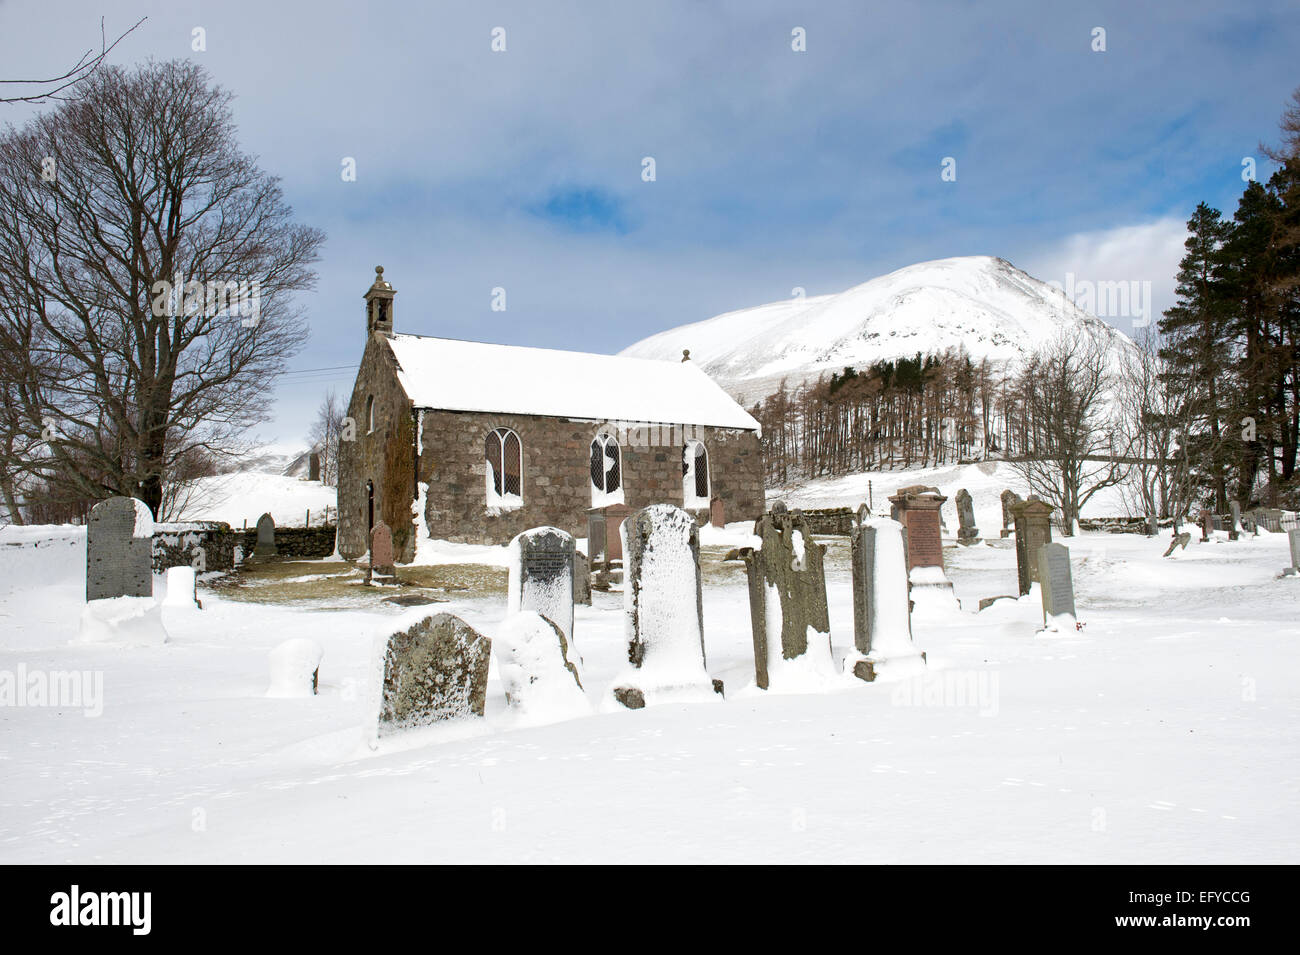 L'église paroissiale de Glenshee dans la neige de l'hiver. Spittal of Glenshee, Perth et Kinross. L'Ecosse Banque D'Images